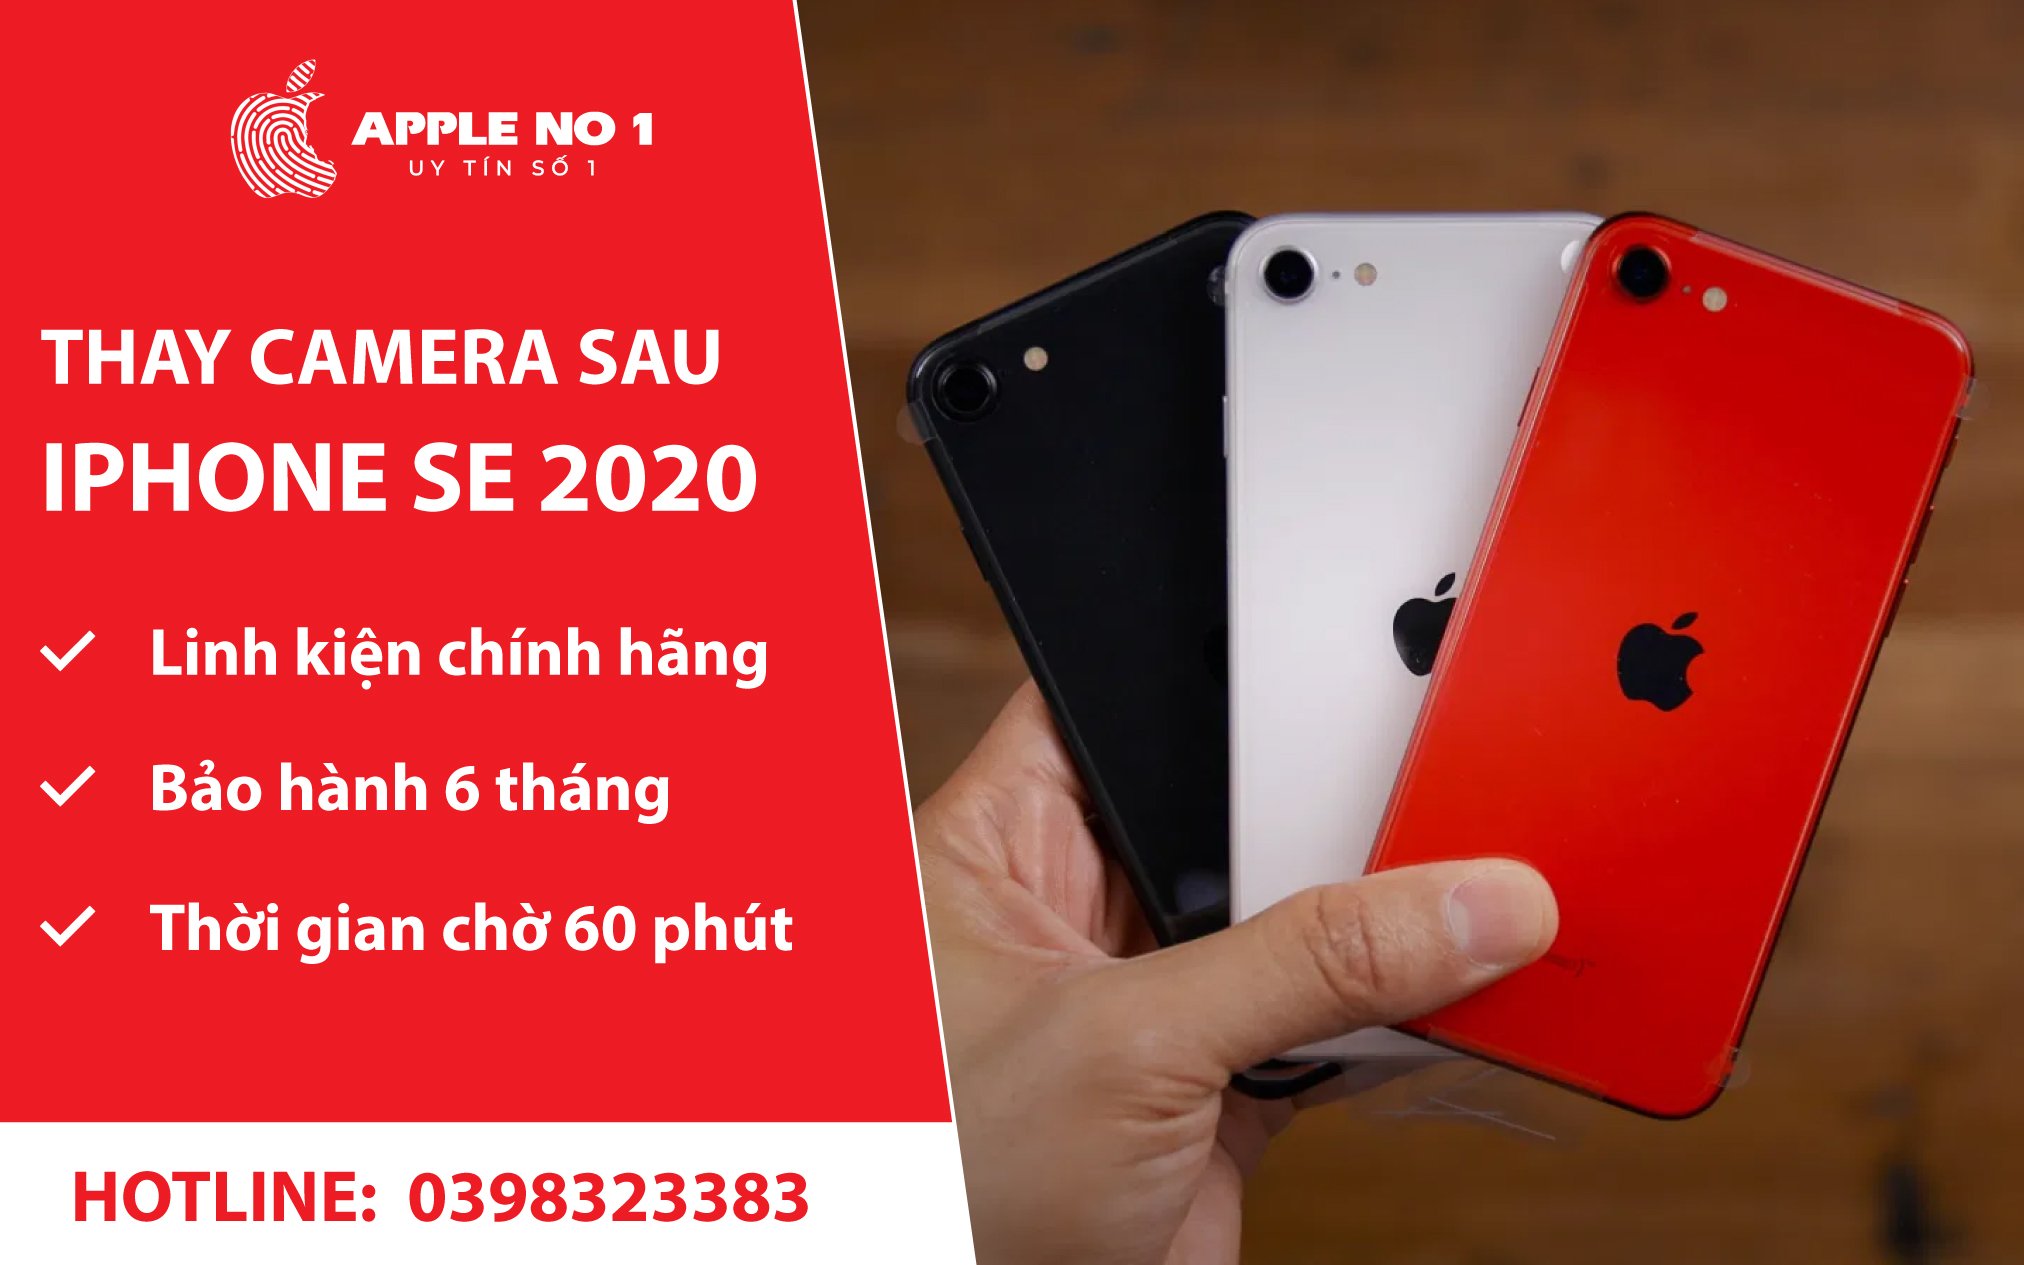 dich vu thay camera sau iphone se 2020 chinh hang, uu dai tai apple no.1